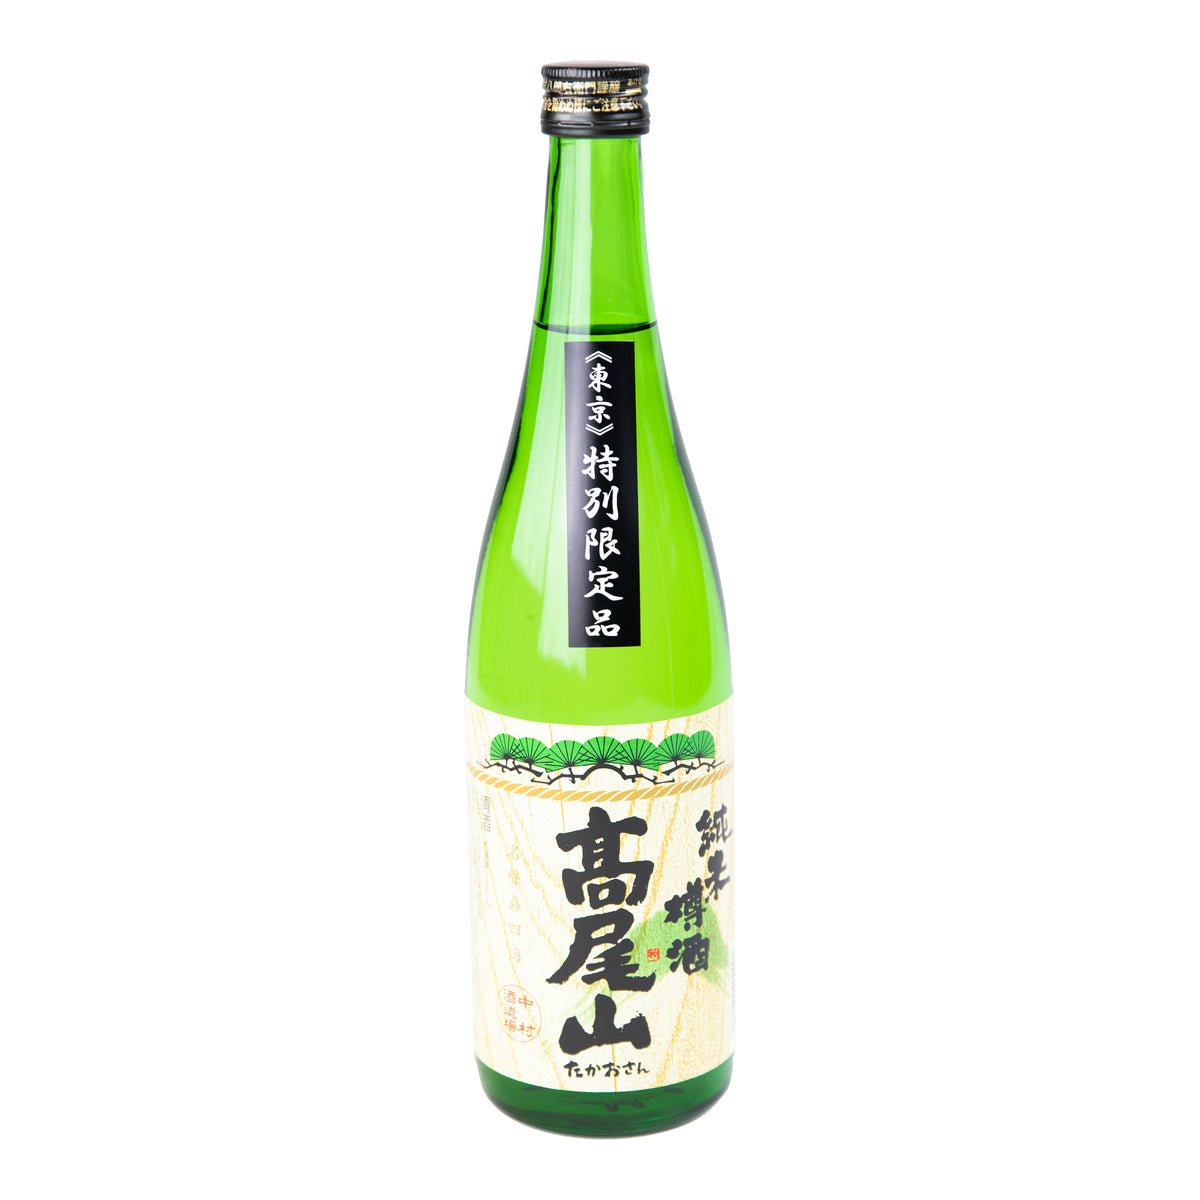 予約】 日本酒 一升瓶 5本セット 特別純米 龍の尾 山猿 南部美人 浦霞 